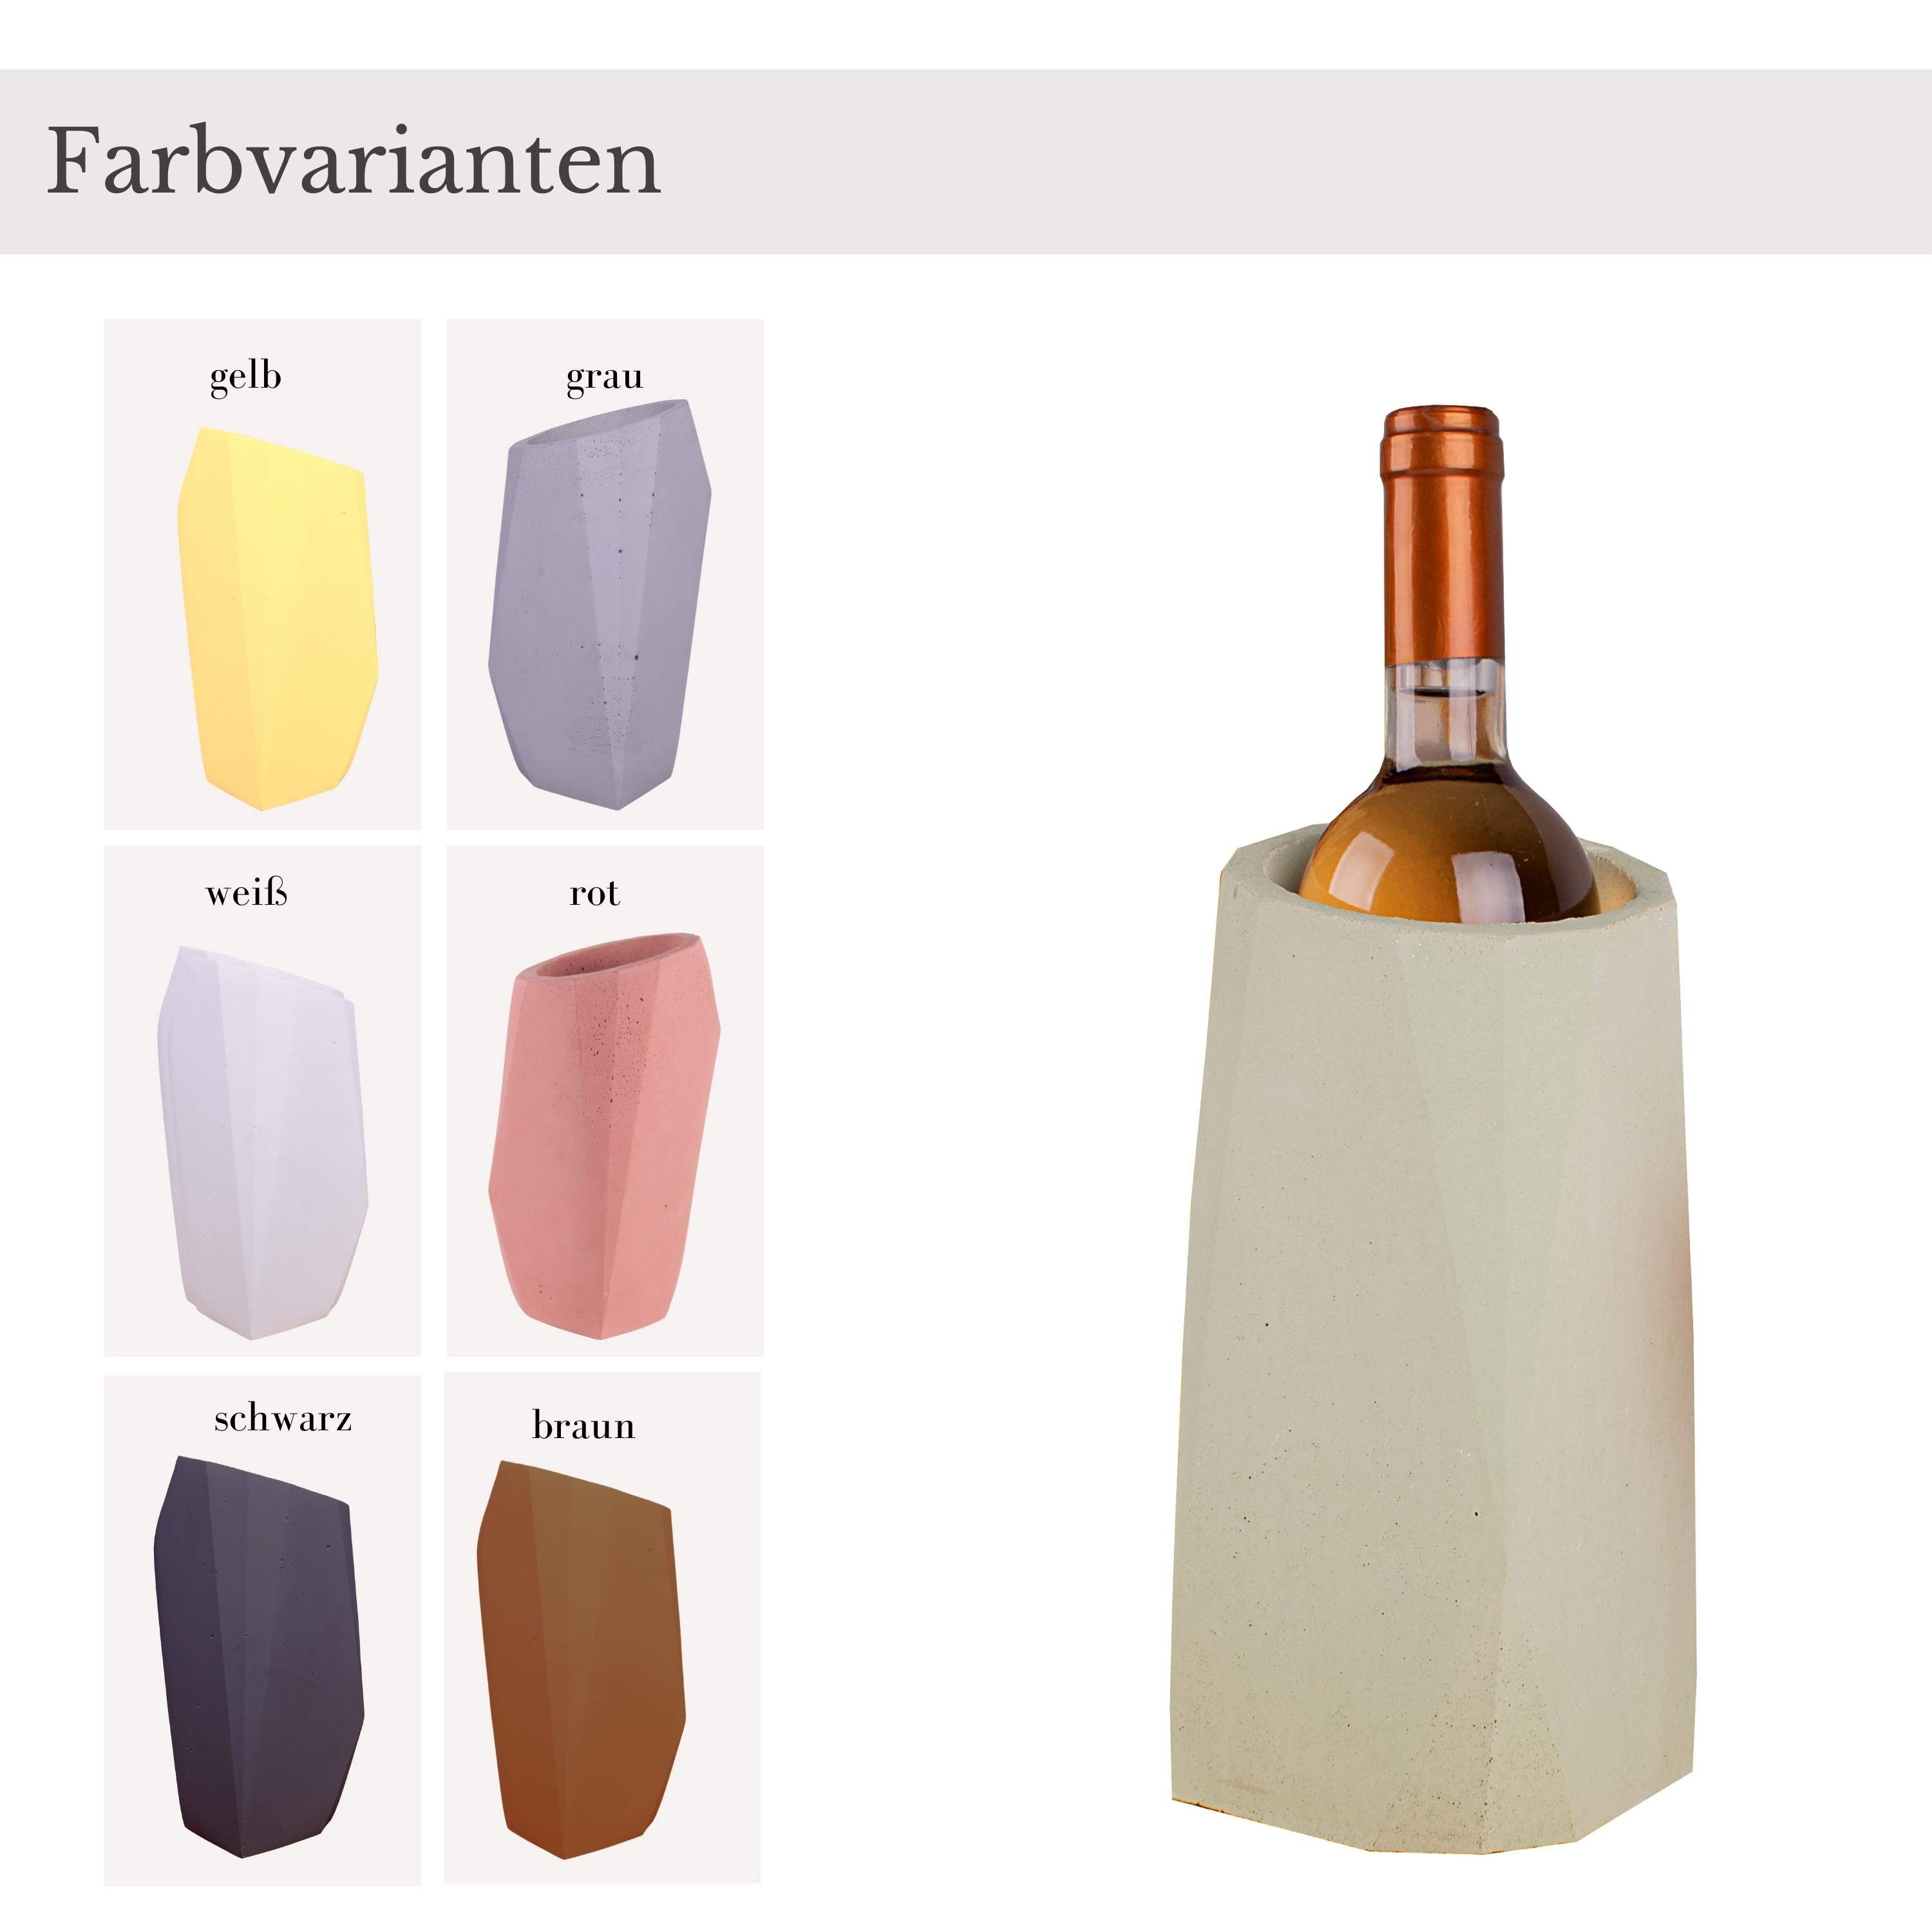 Mint" Flaschenk Sektkühler Dekoobjekt Weinkühler TIVENDIS Beton, 25cm, Beton aus "Massif